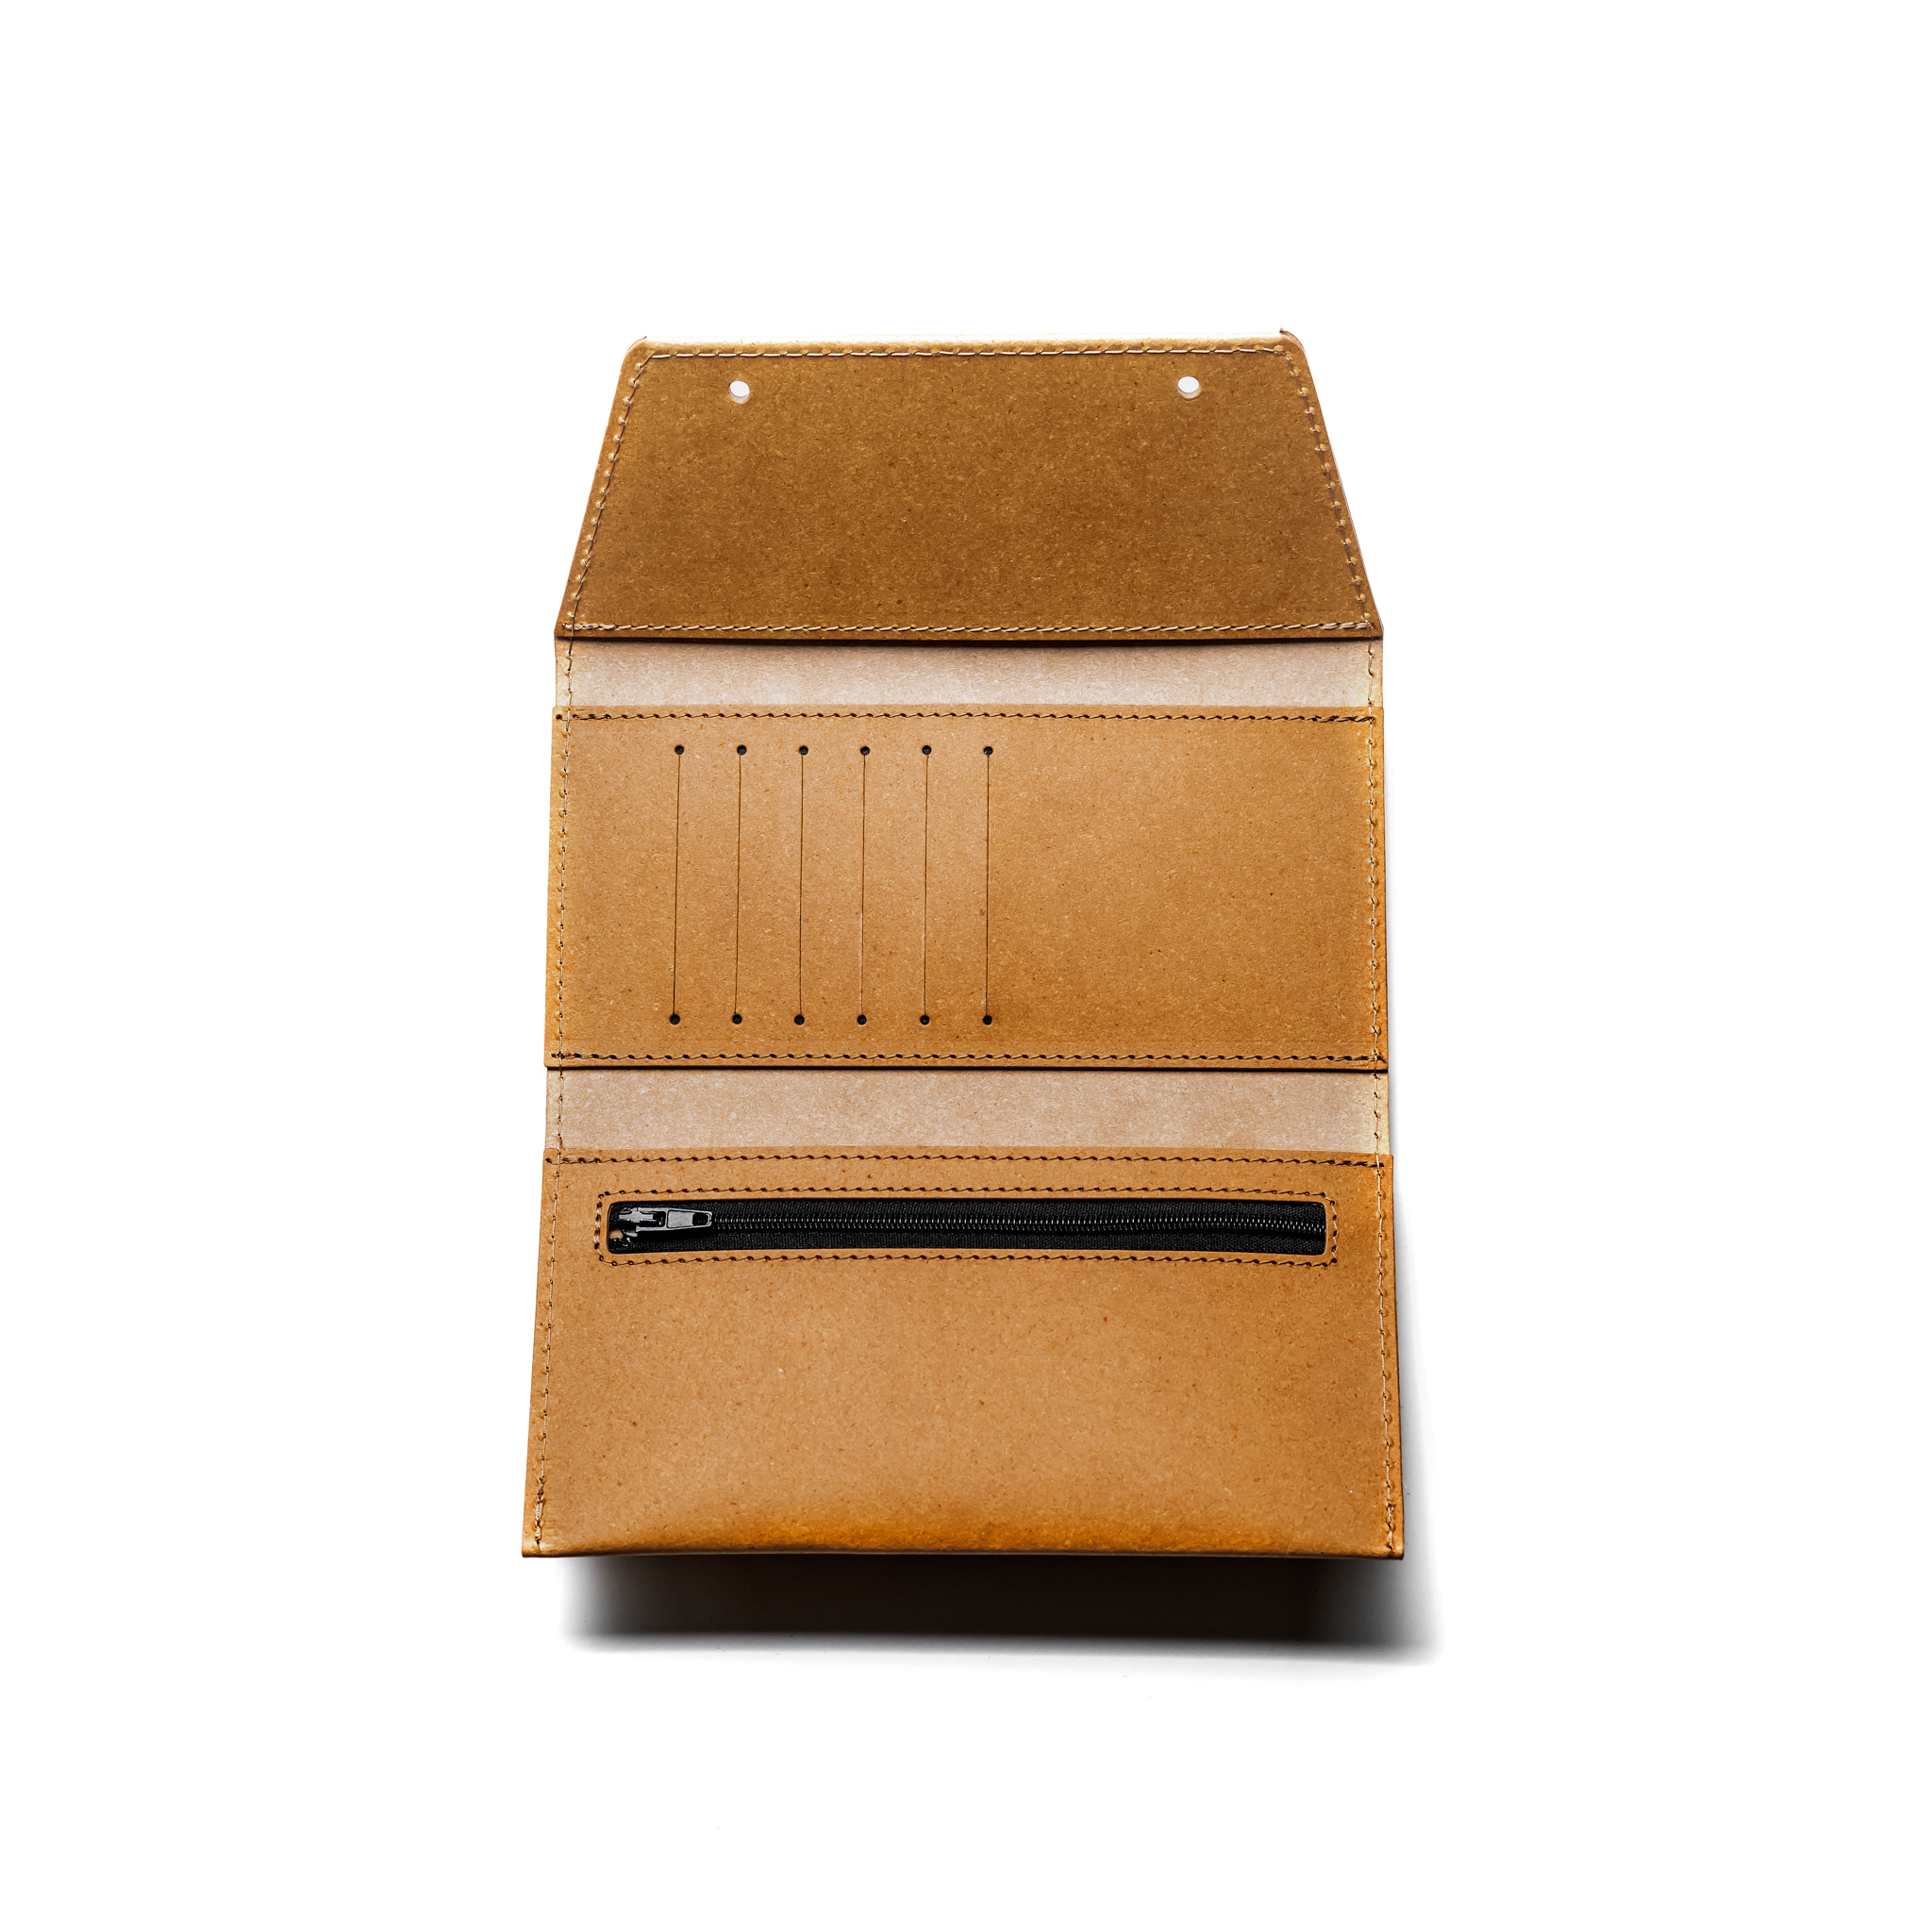 Porte clés vis en cuir recyclé - L'INATELIER Design & artisanat